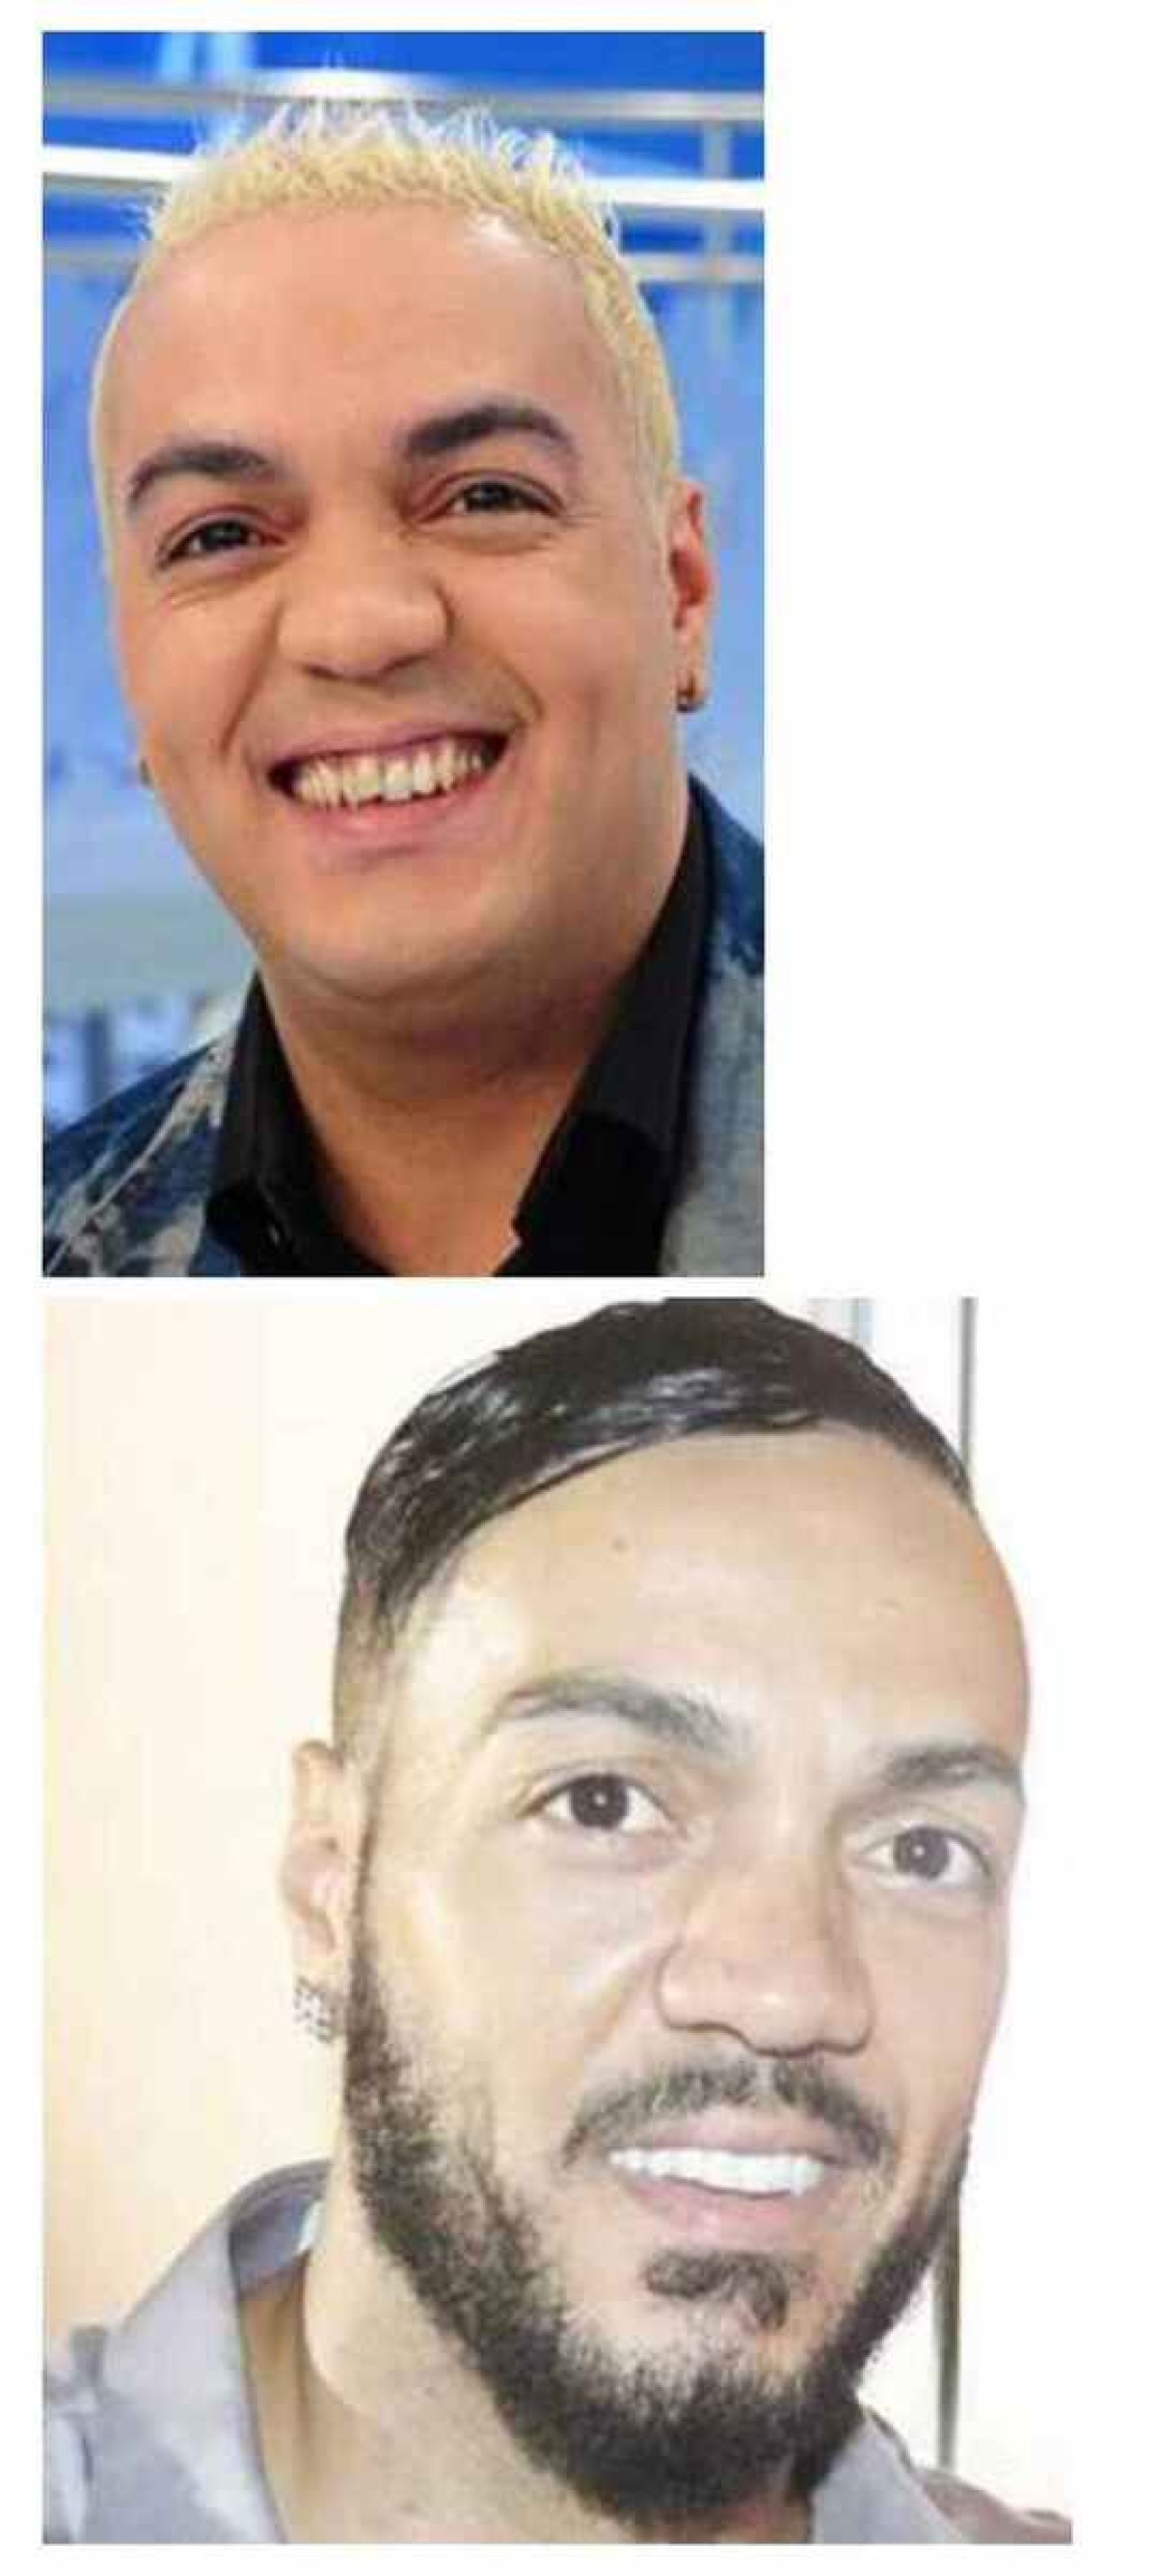 O antes e depois do sorriso do cantor Belo